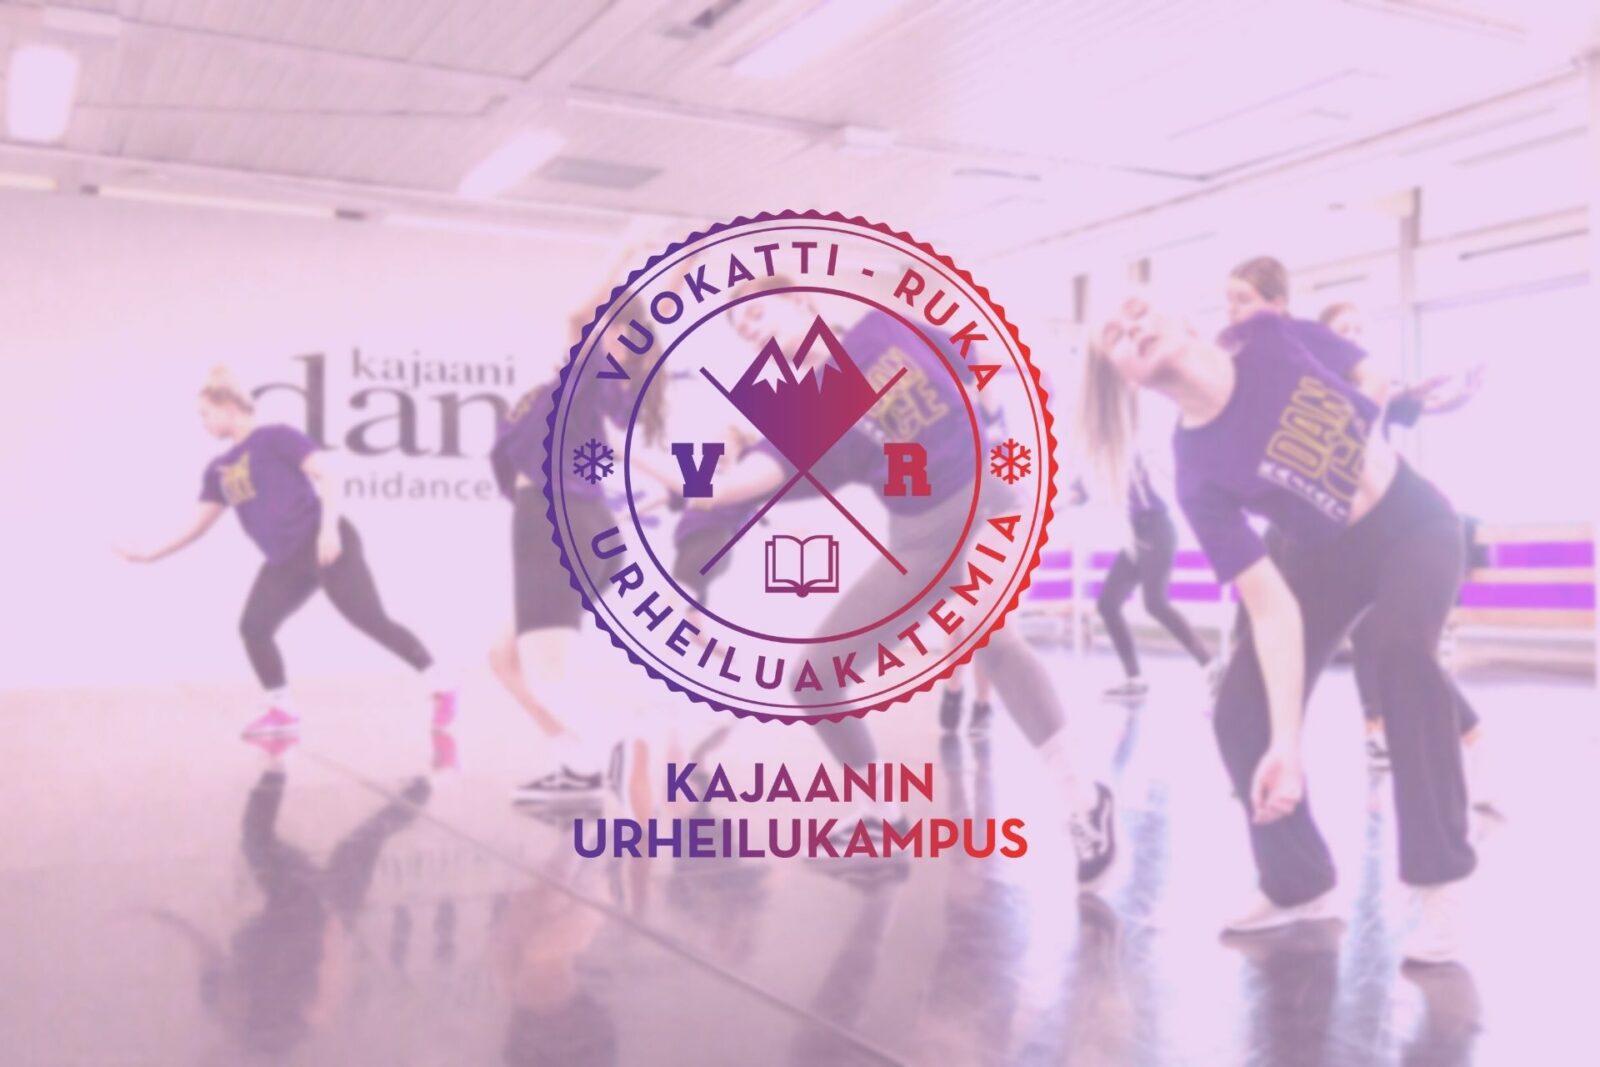 Vuokatti-Ruka urheiluakatemia-Kajaanin kampus logo, takana tanssivia nuoria